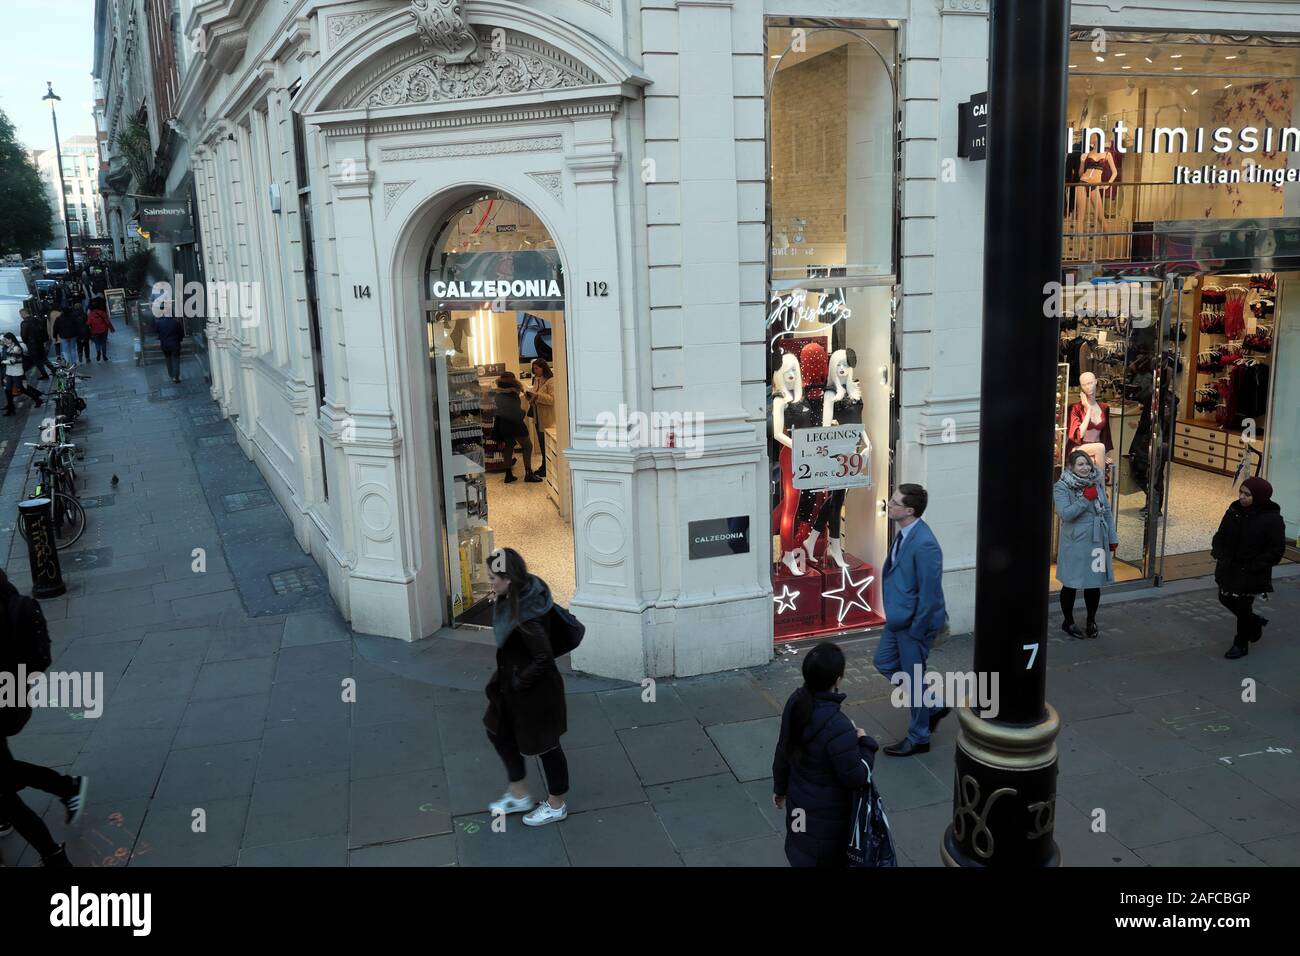 People shopping su Oxford Street in inverno a piedi passato Caldezonia ingresso del negozio nel West End di Londra Inghilterra KATHY DEWITT Foto Stock